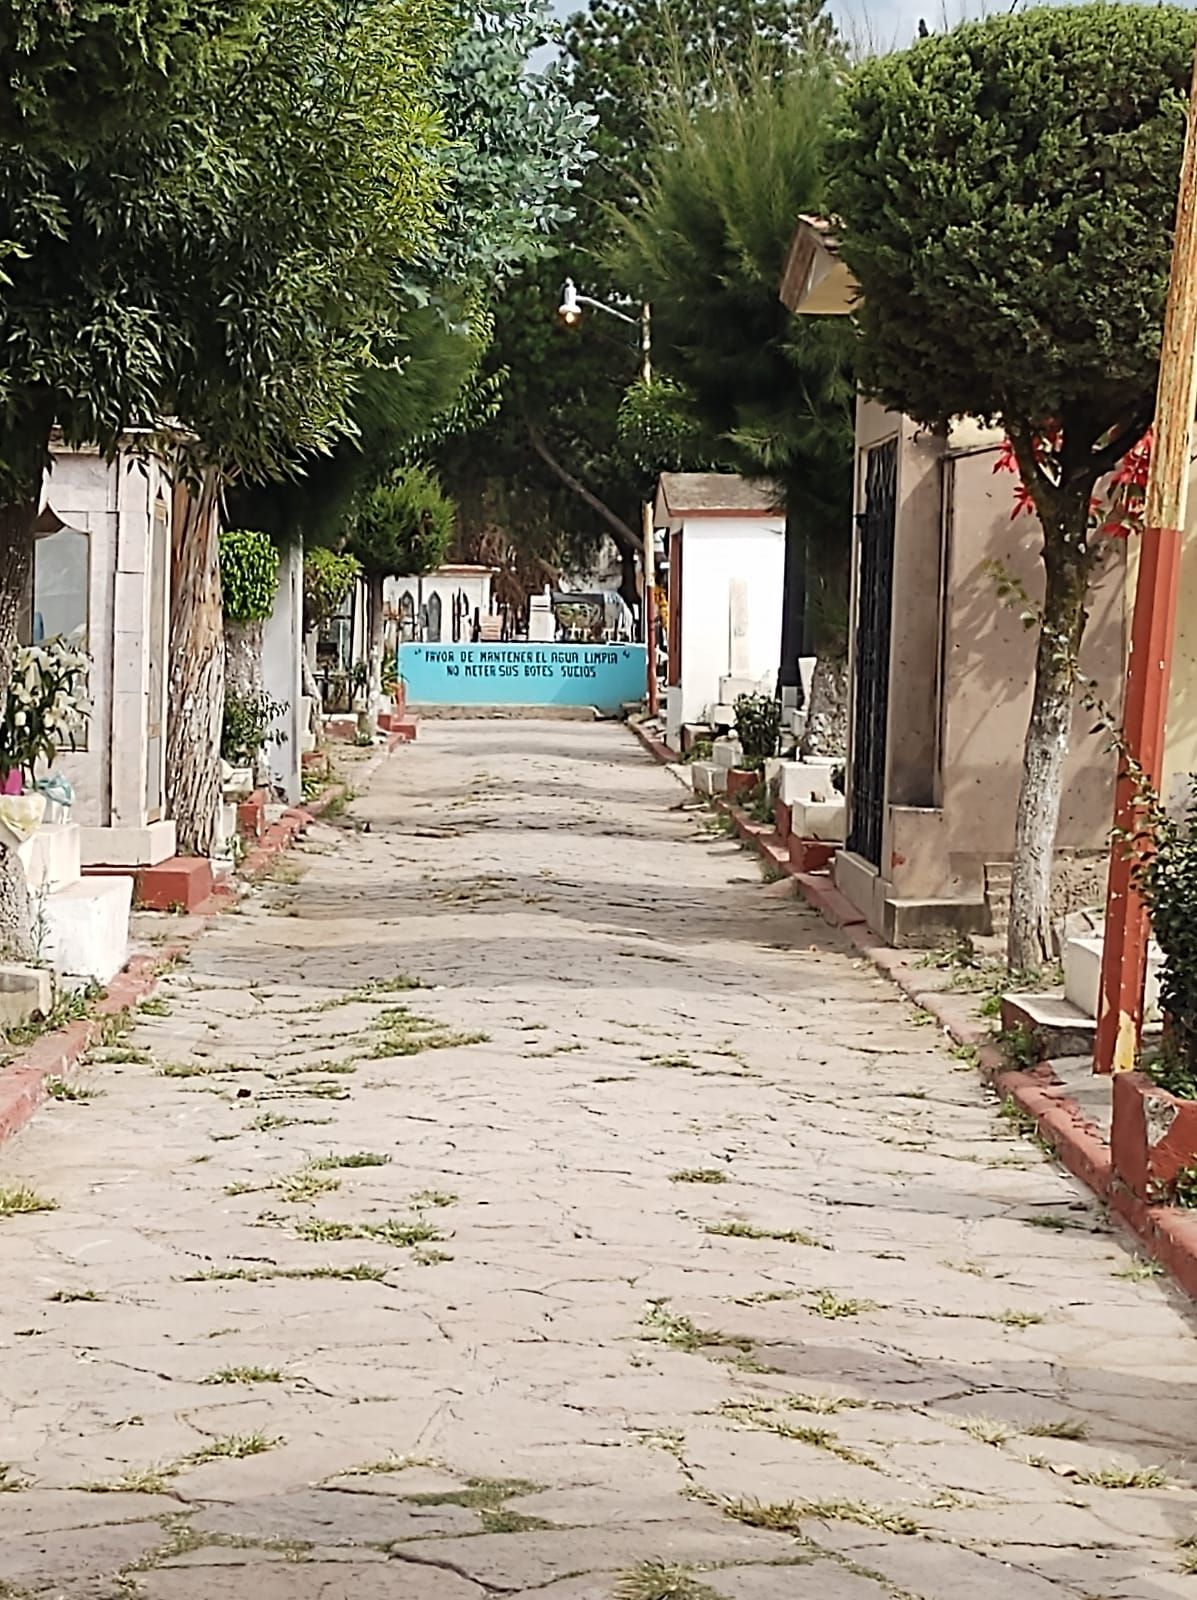 El Gobierno Texcocano pide guarden distancia en la Visita a Panteones
